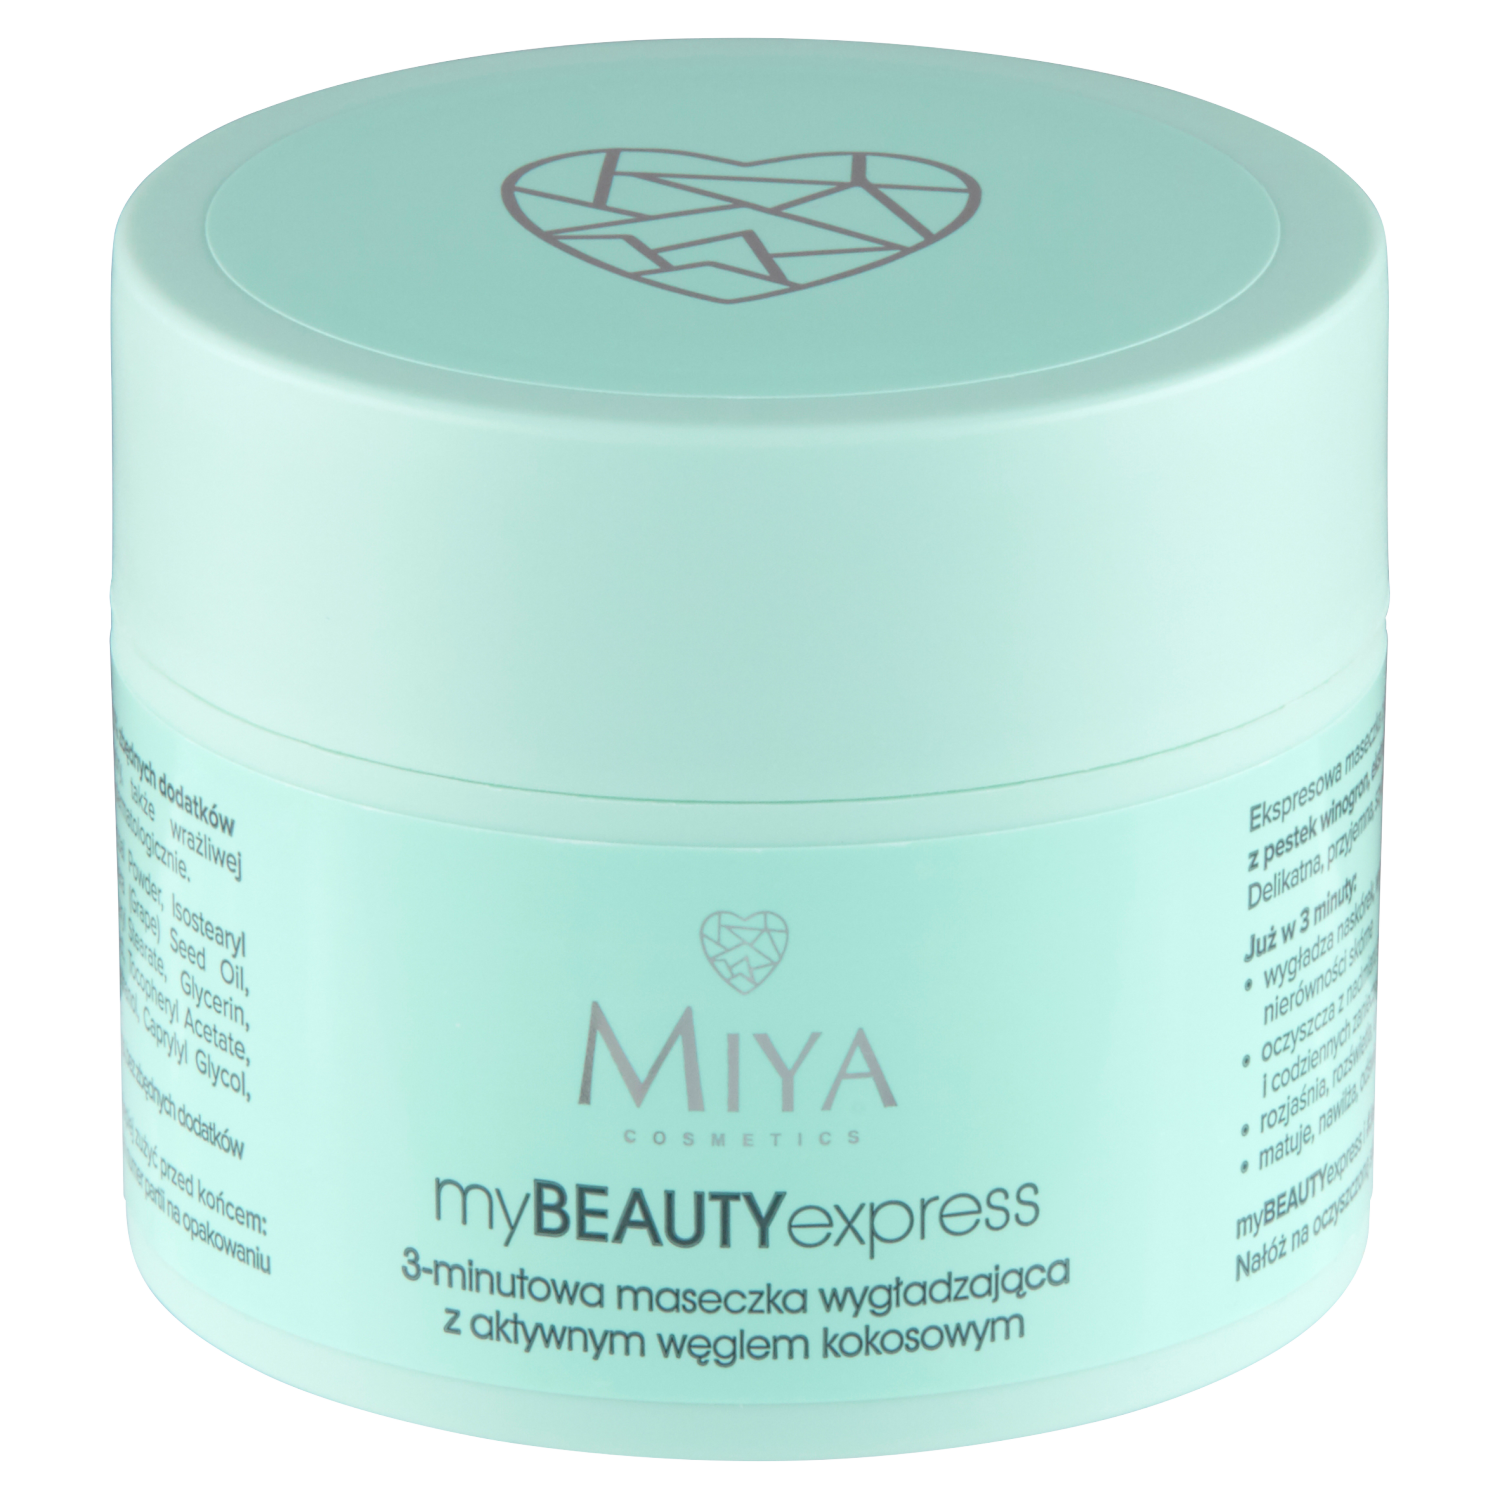 Miya Cosmetics myBEAUTYexpress